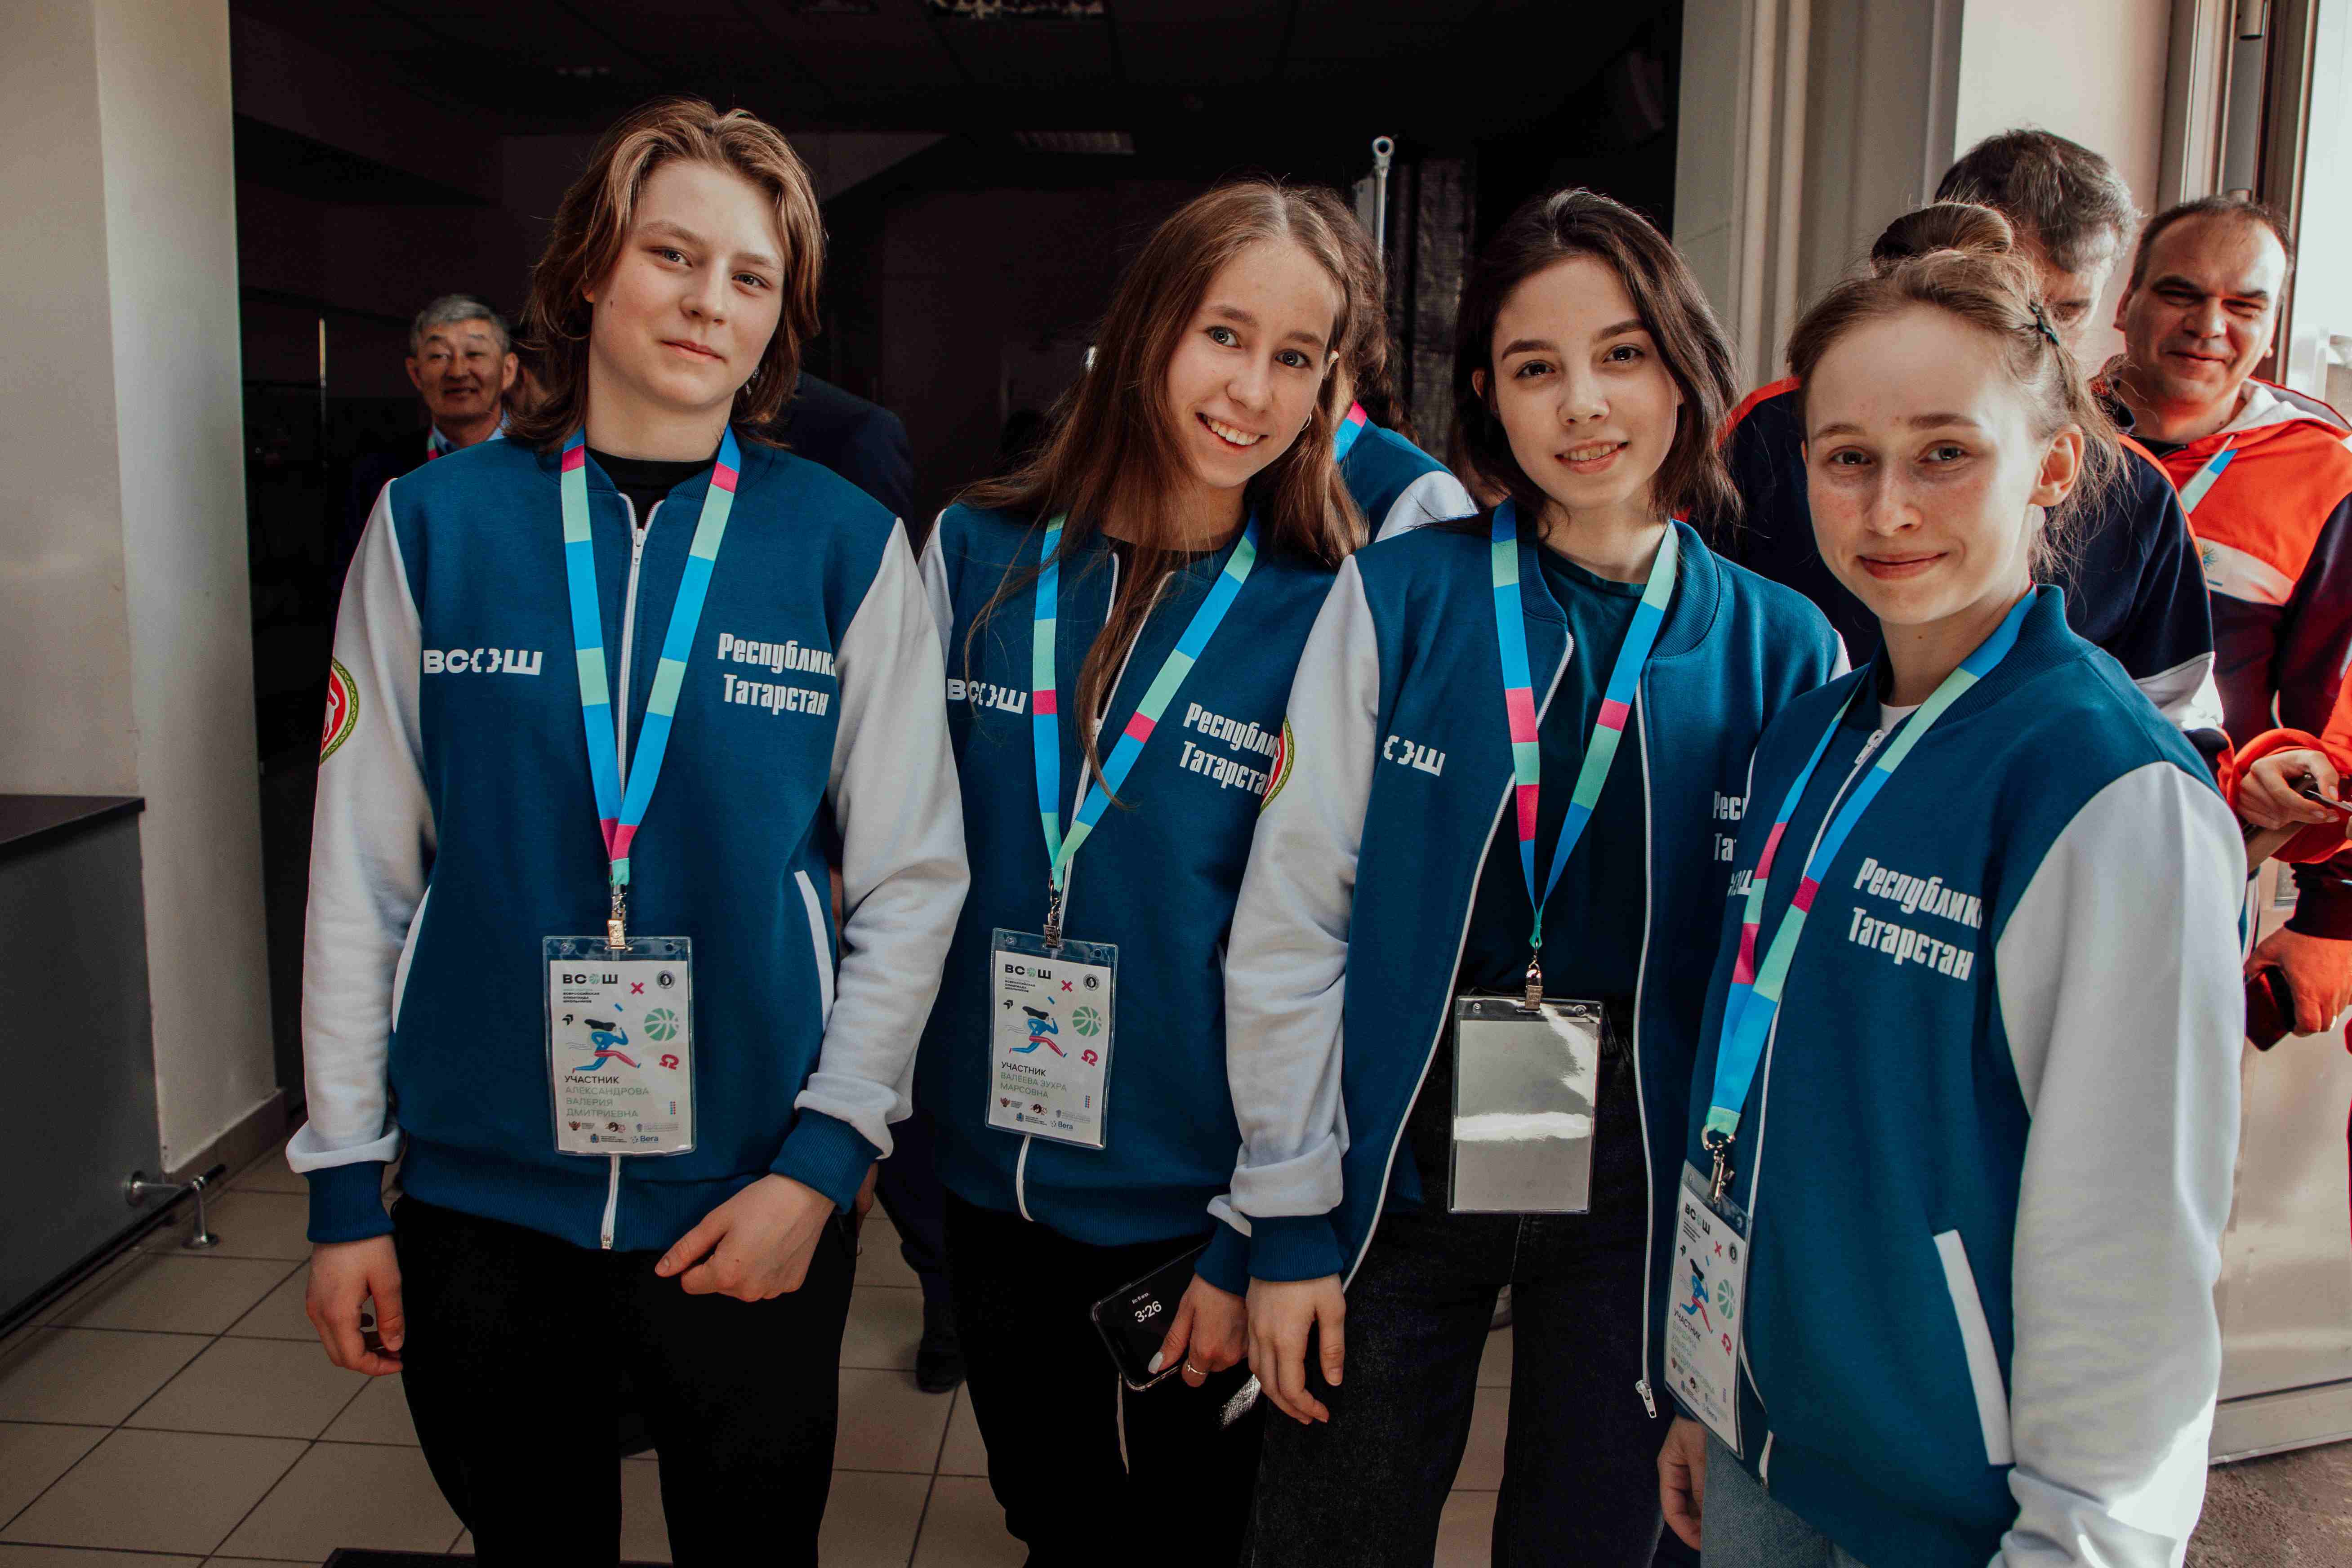 Большим парадом участников открылся Финал Всероссийской олимпиады школьников по физической культуре в Городецком ФОКе